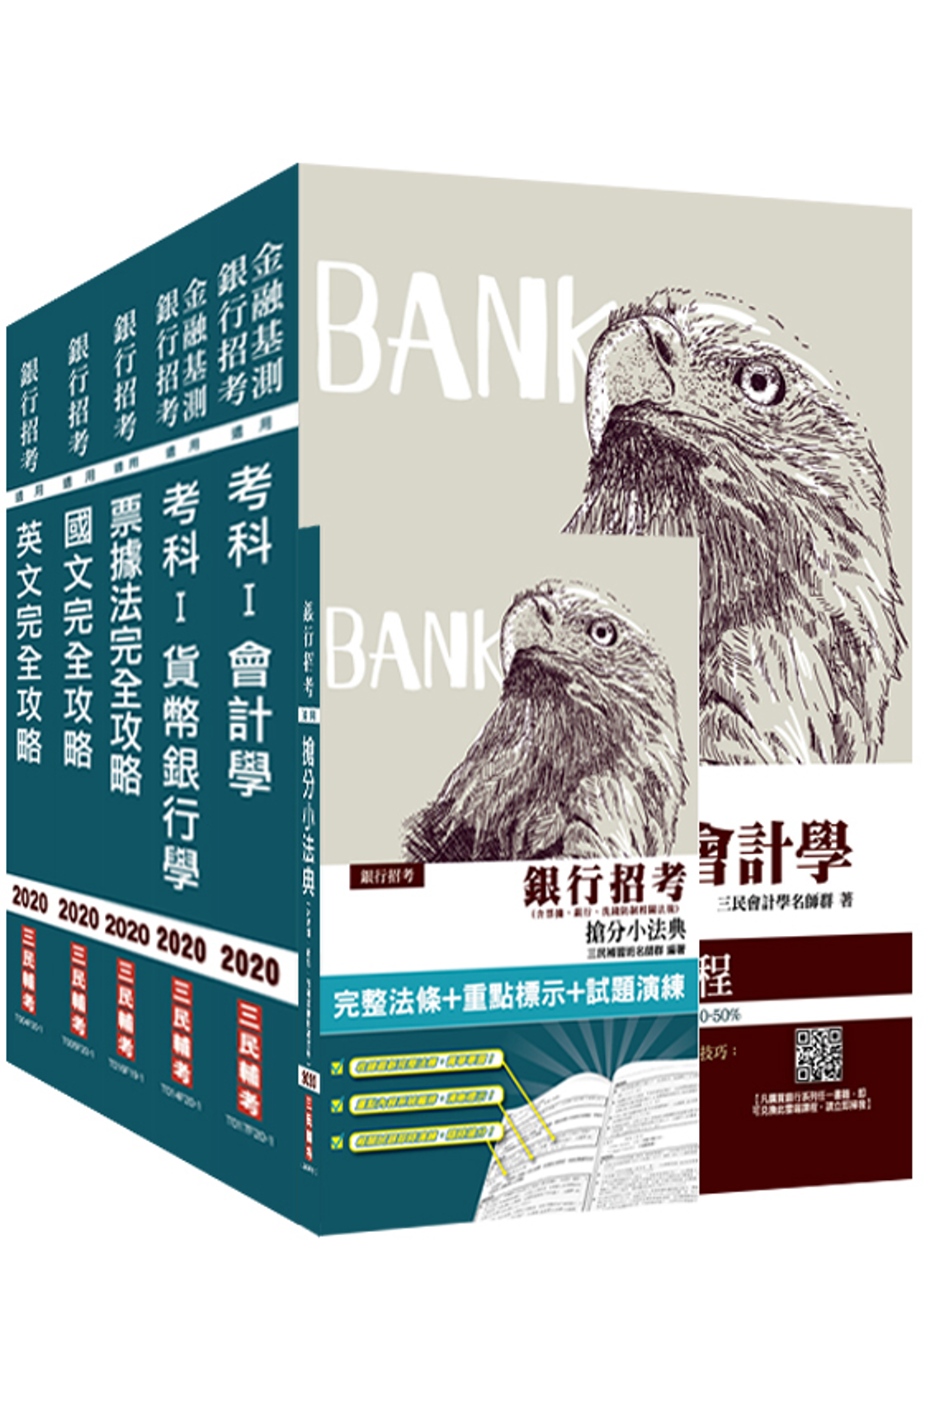 2020年銀行招考[臺灣銀行/土地銀行]5合1套書(贈銀行招考搶分小法典)